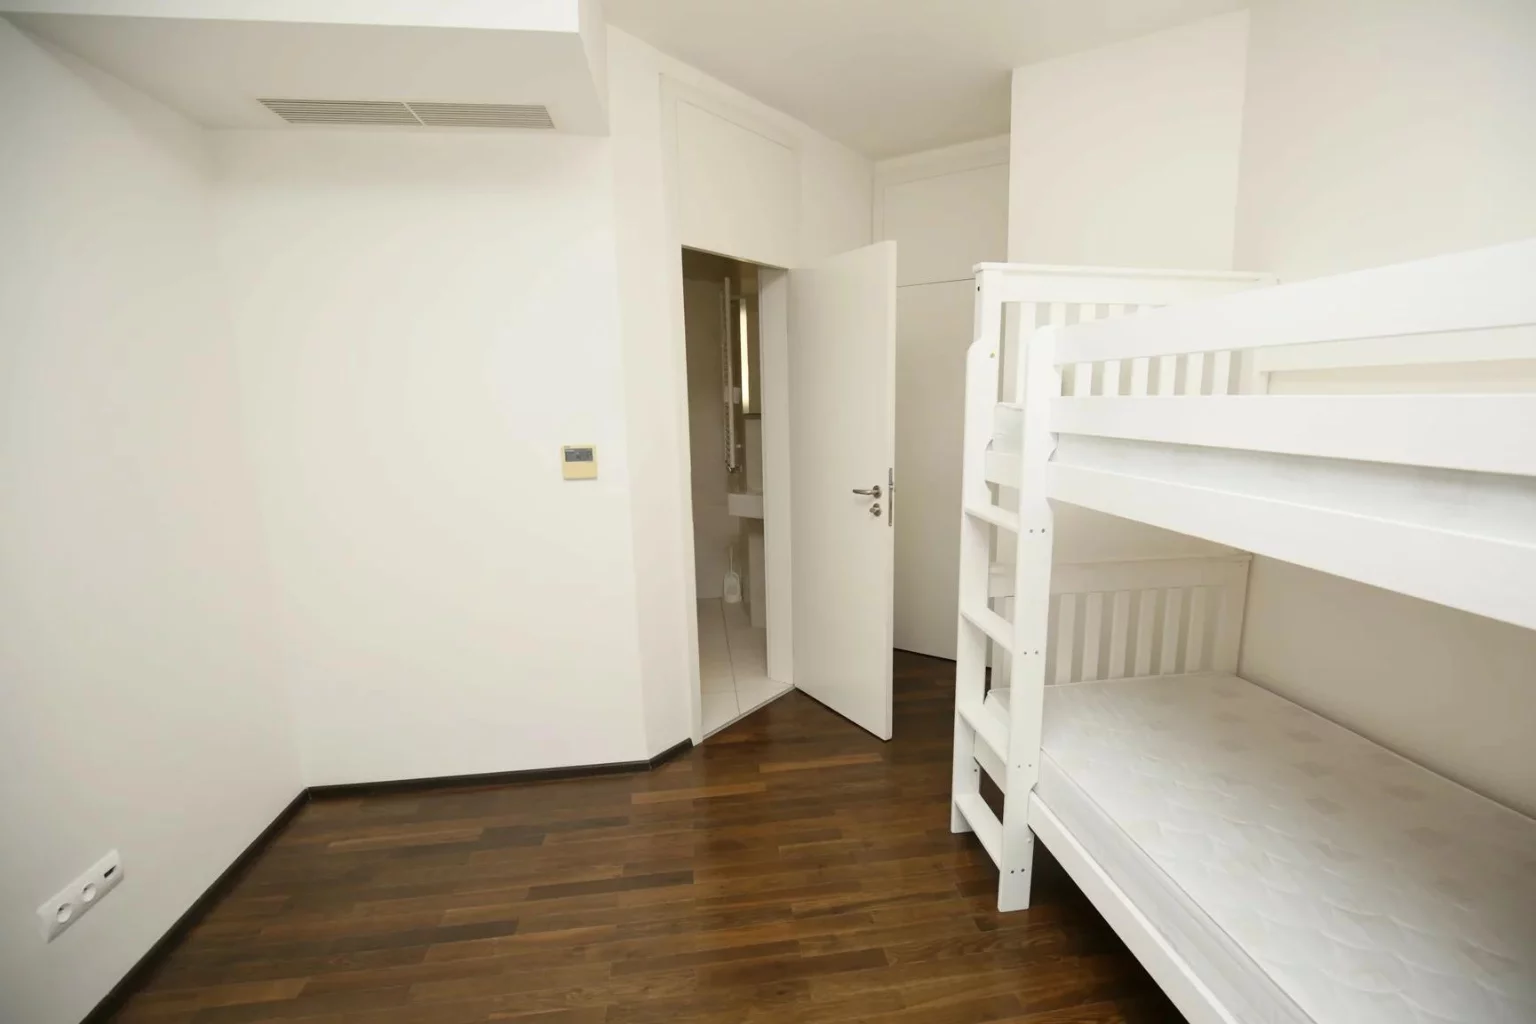 A bunk bed in a child's room in a flat in the Czech Republic